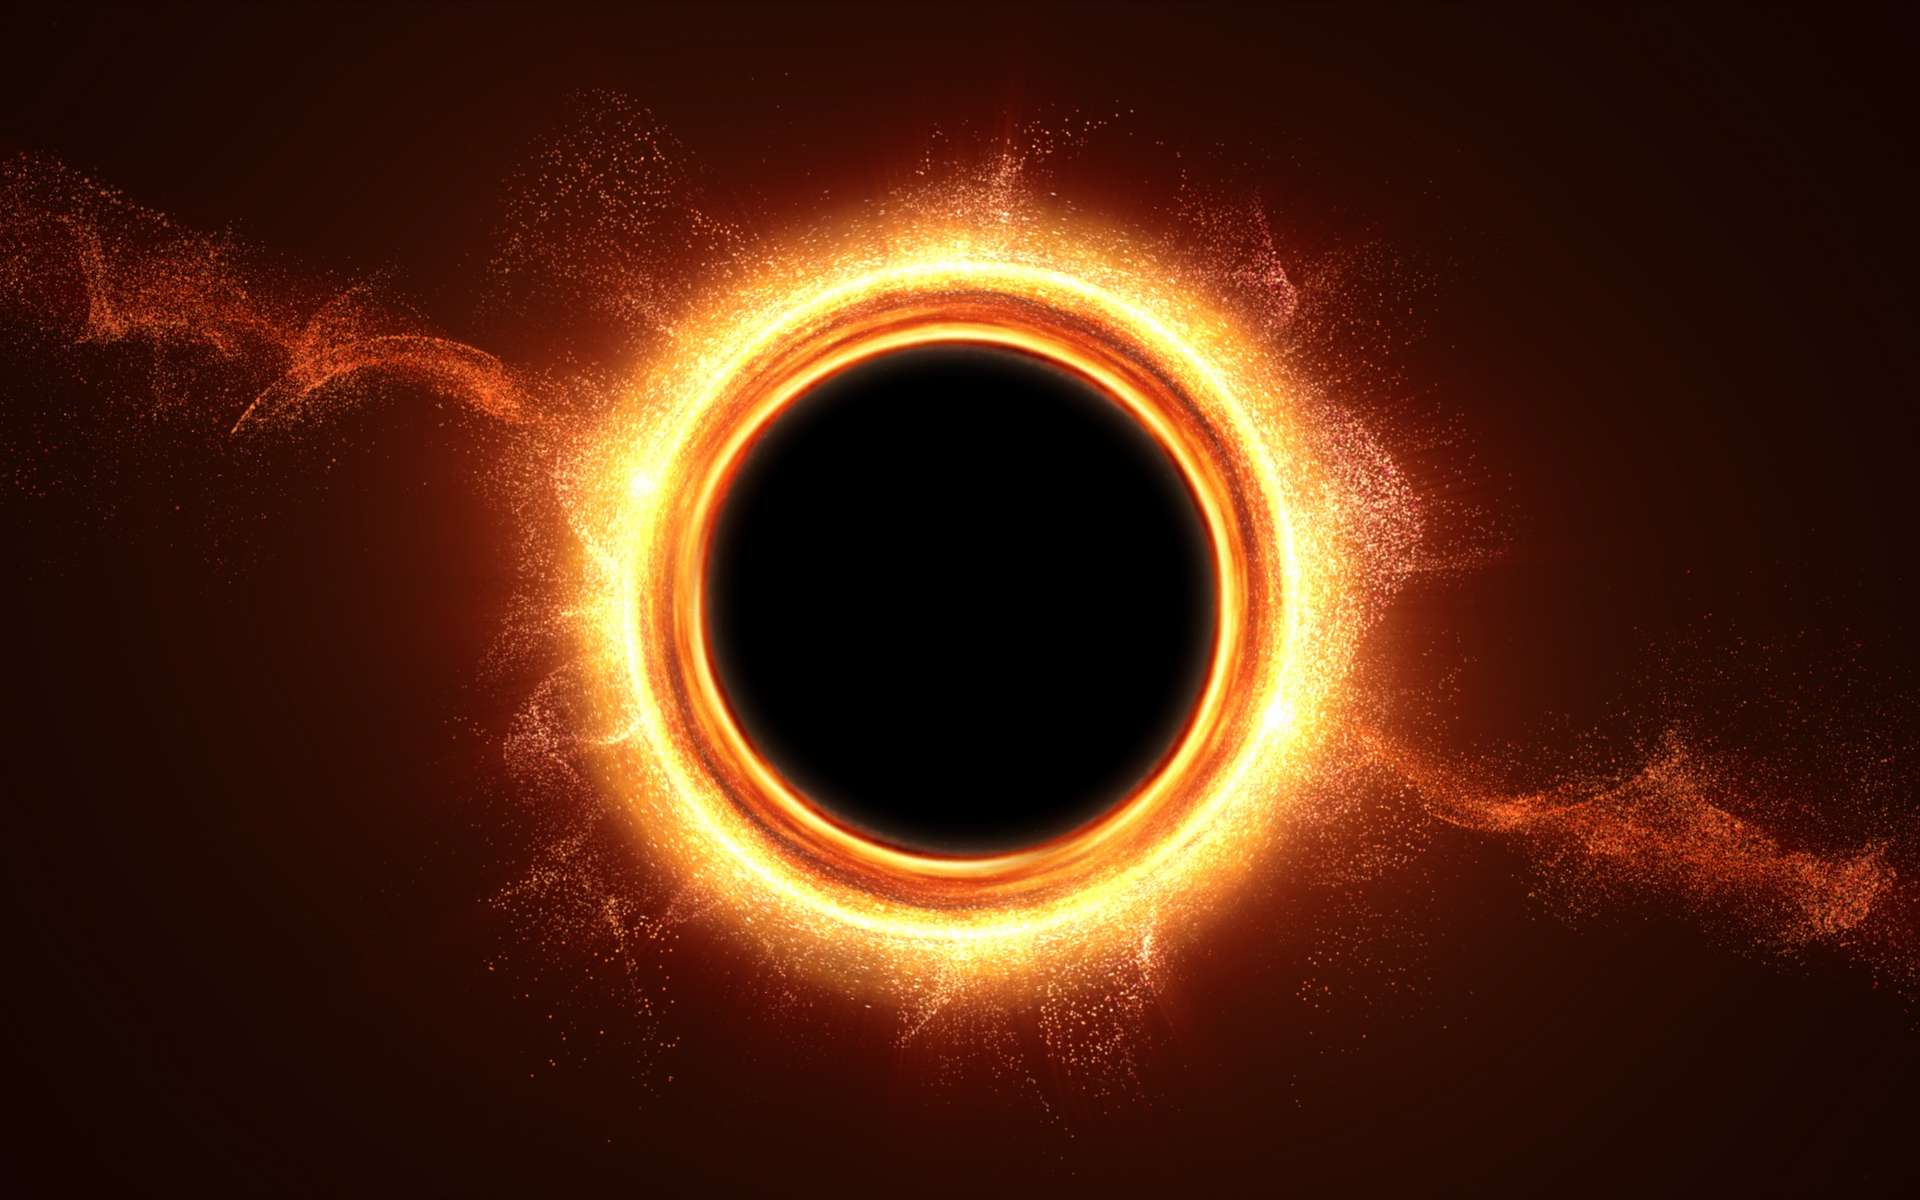 Une vue d'artiste d'un trou noir avalant la matière provenant d'une étoile qu'il vient de détruire par ses forces de marée. © Kittiphat, Adobe Stock